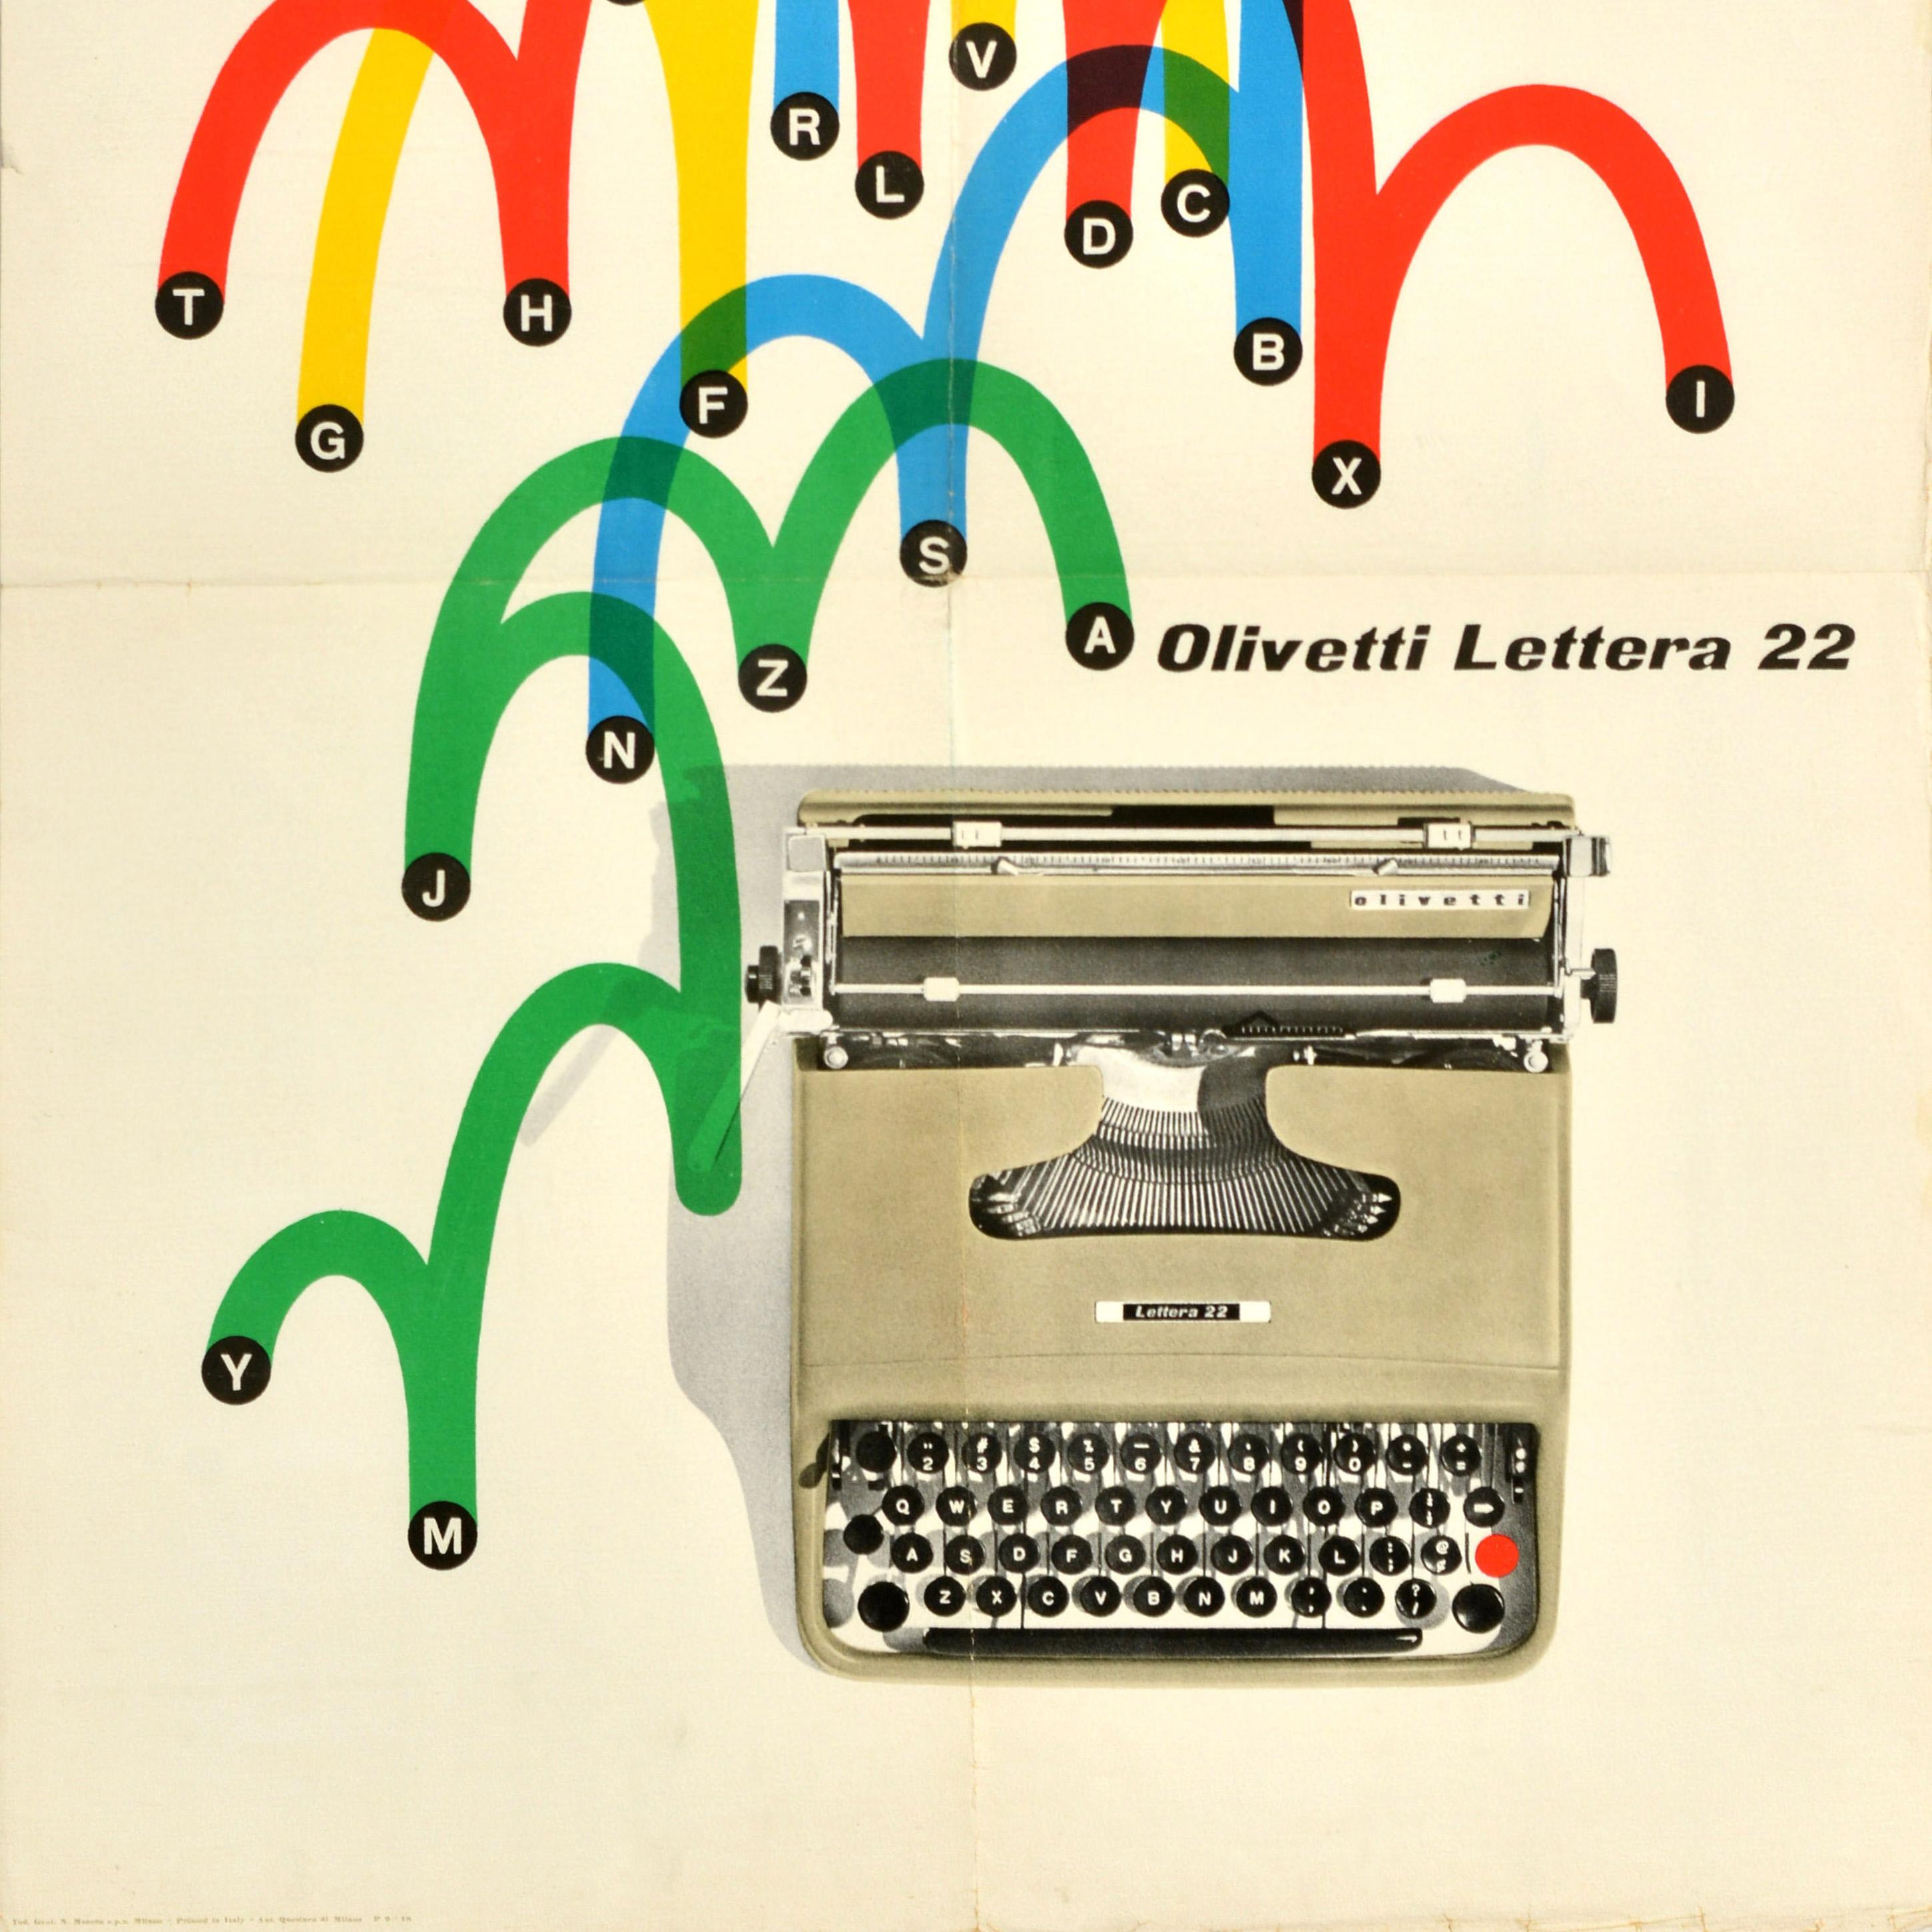 Affiche publicitaire originale pour la machine à écrire Olivetti Lettera 22, présentant un superbe graphisme du milieu du siècle, avec des arcs de cercle colorés en bleu, jaune, rouge et vert reliant les lettres de l'alphabet au-dessus d'une